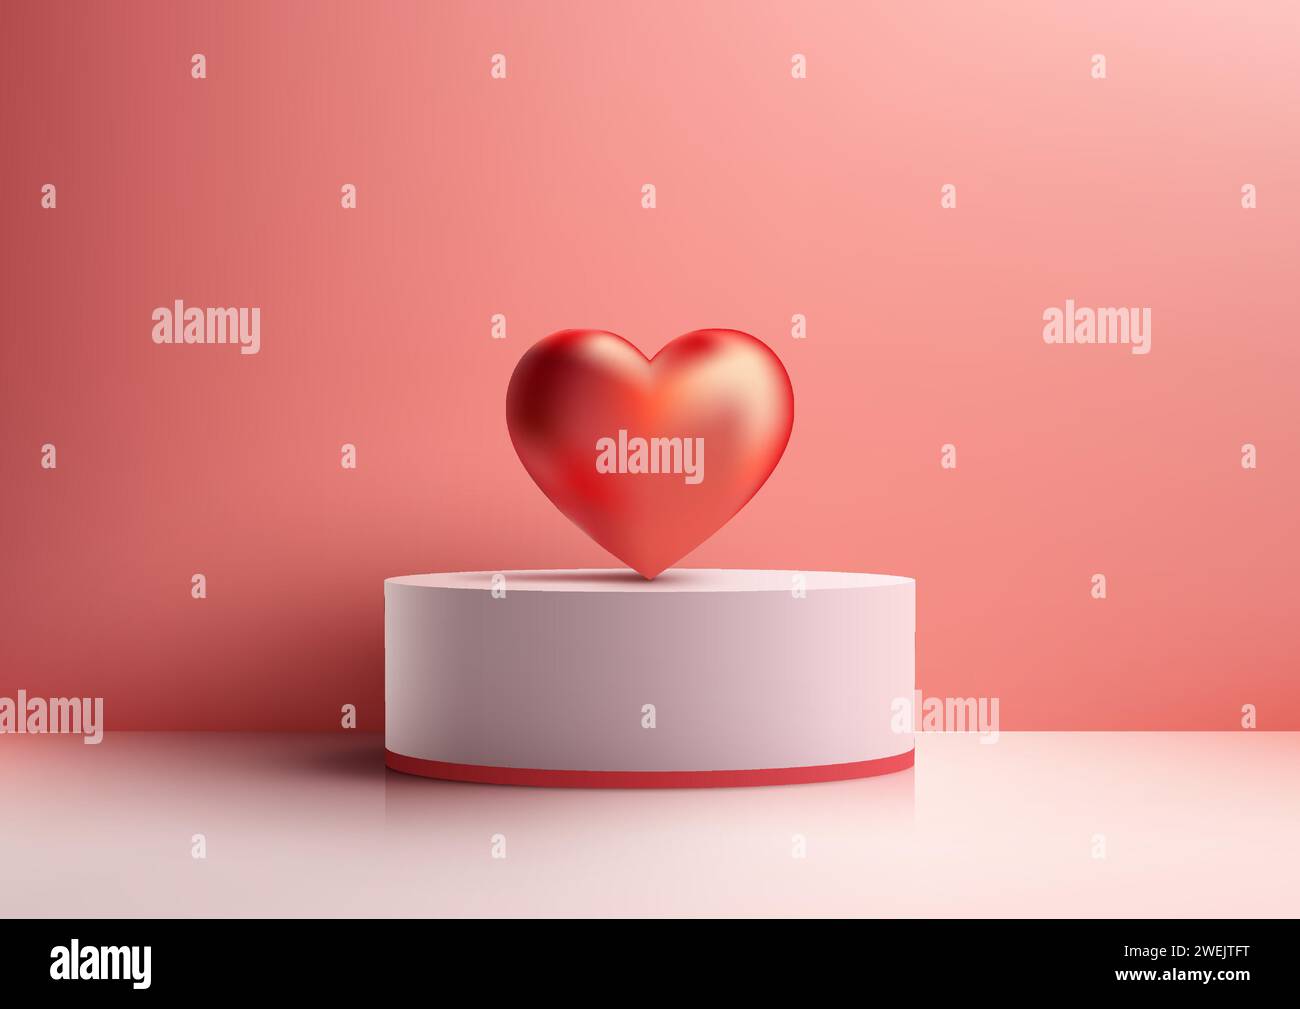 3D White Podium Mockup. Minimalistisches Design mit rotem Herzhintergrund rückt Ihr Produkt zum Valentinstag ins Rampenlicht. Vektorabbildung Stock Vektor